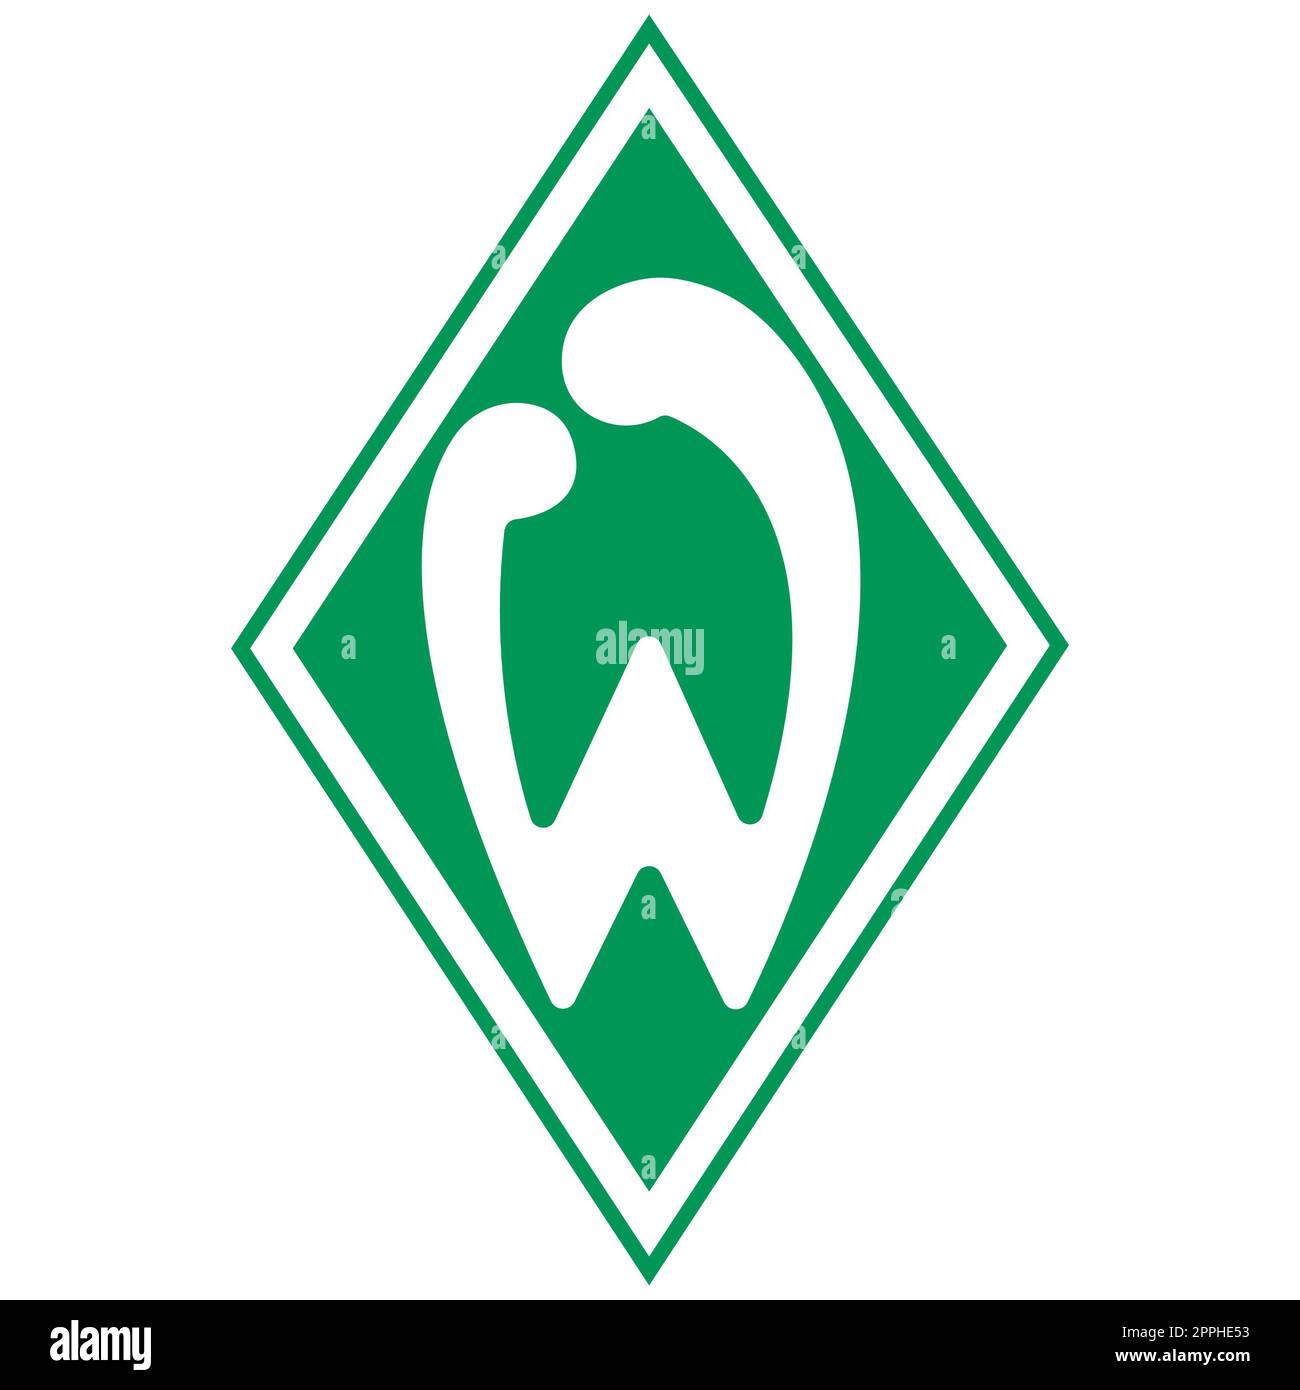 Francoforte sul meno, Germania - 10.23.2022 Logo della squadra di calcio tedesca Werder Bremen. Immagine vettoriale. Foto Stock